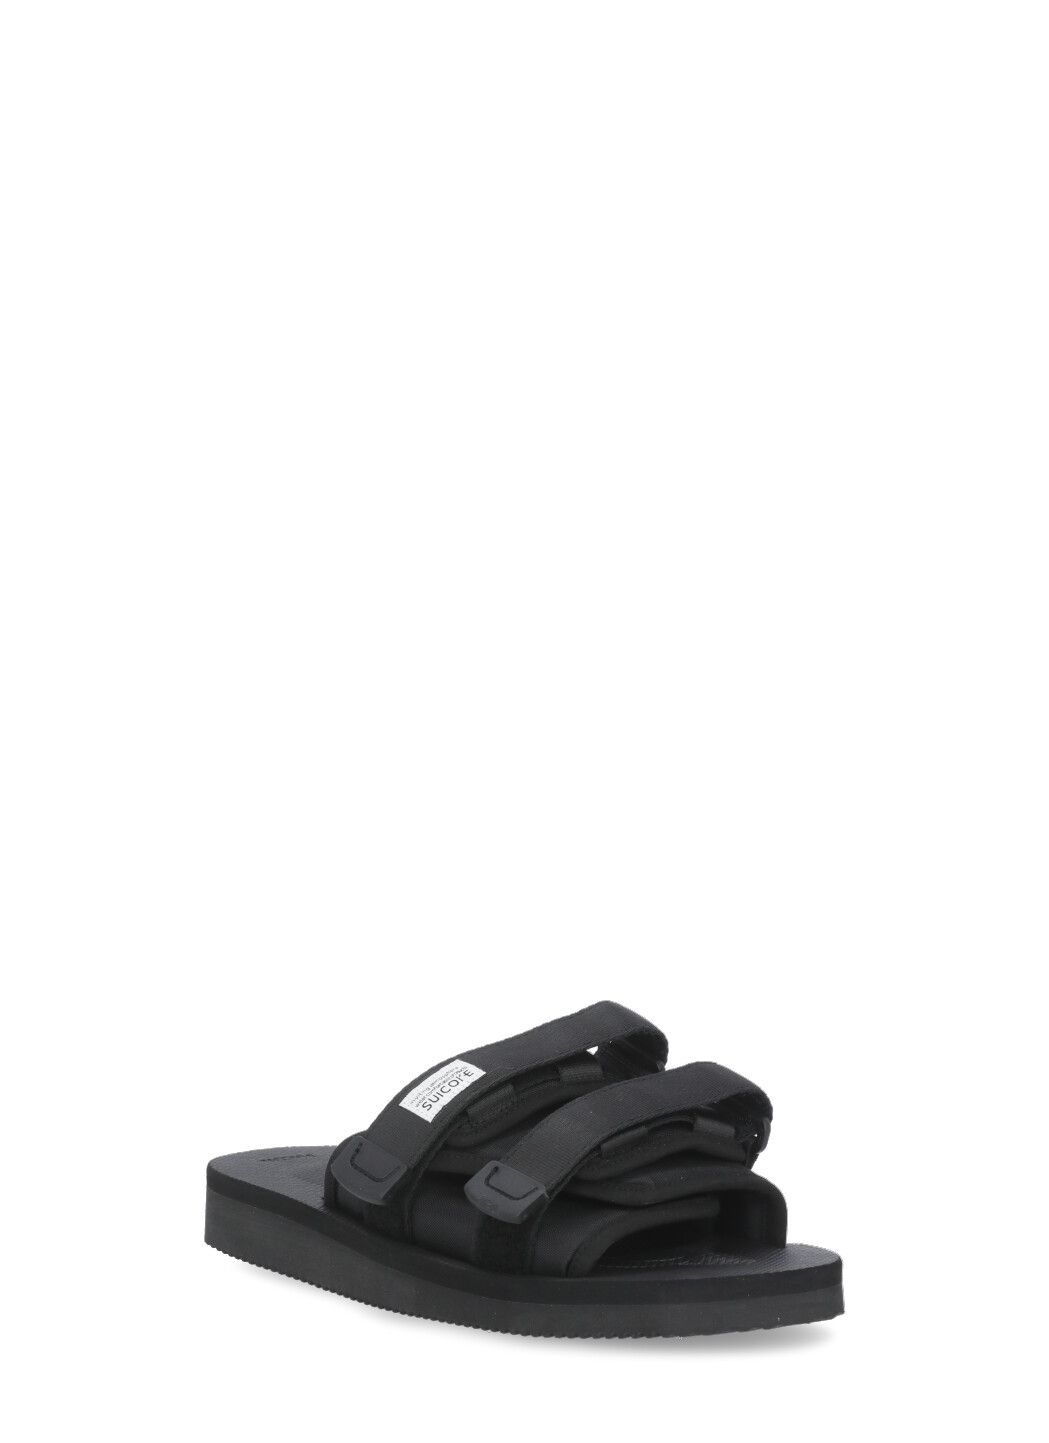 MOTO-Cab sandals